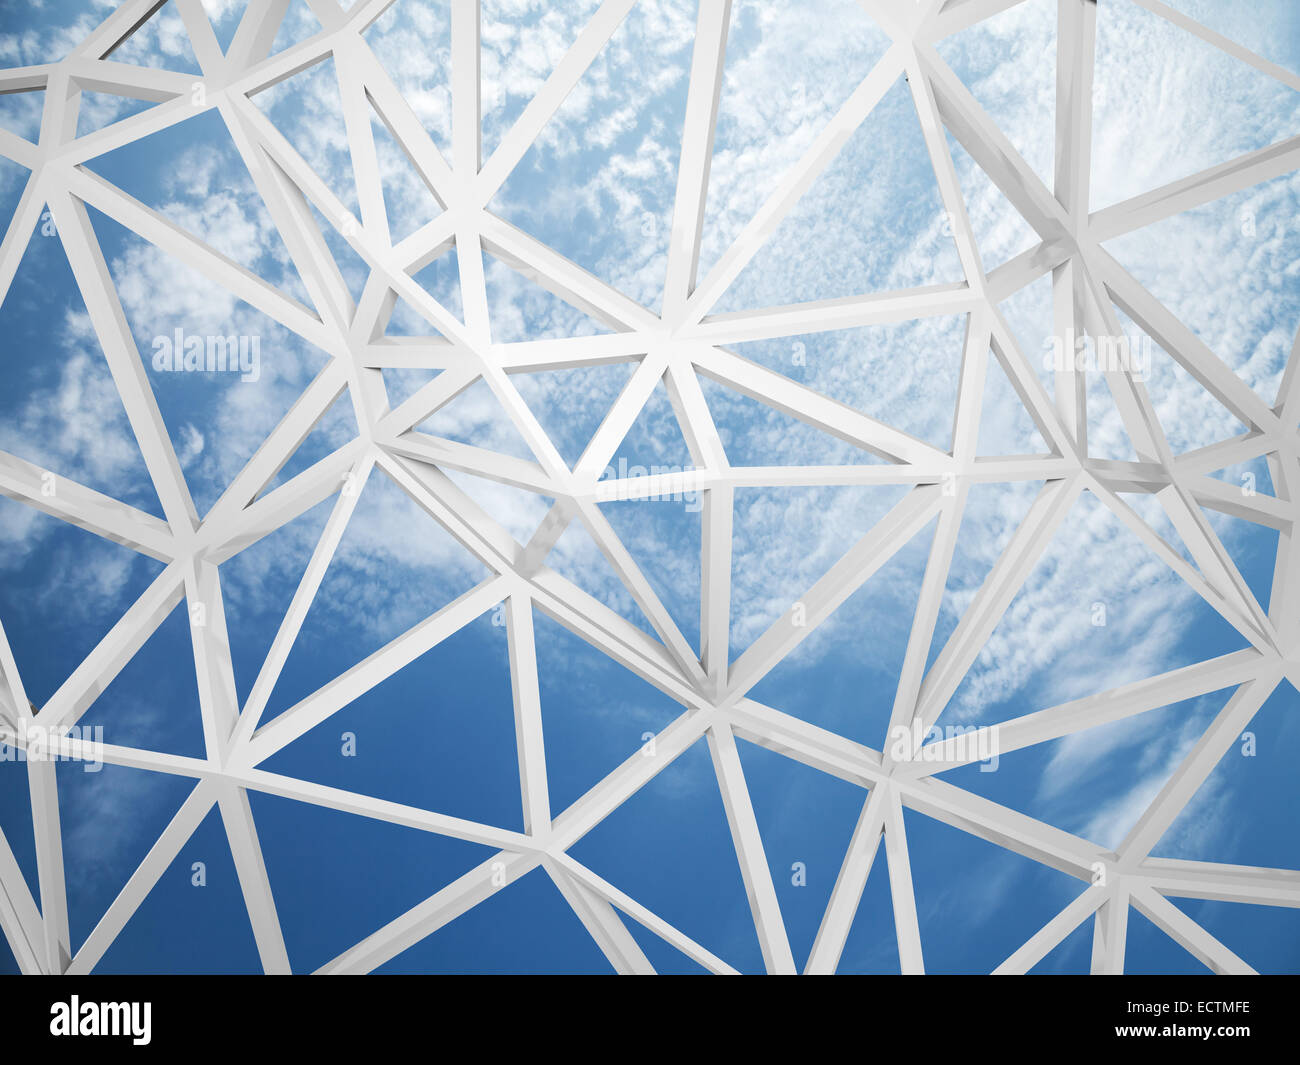 Abstrakte kabelgebundene 3D-Konstruktion mit chaotischen Dreiecke Form auf blauen Himmelshintergrund Stockfoto